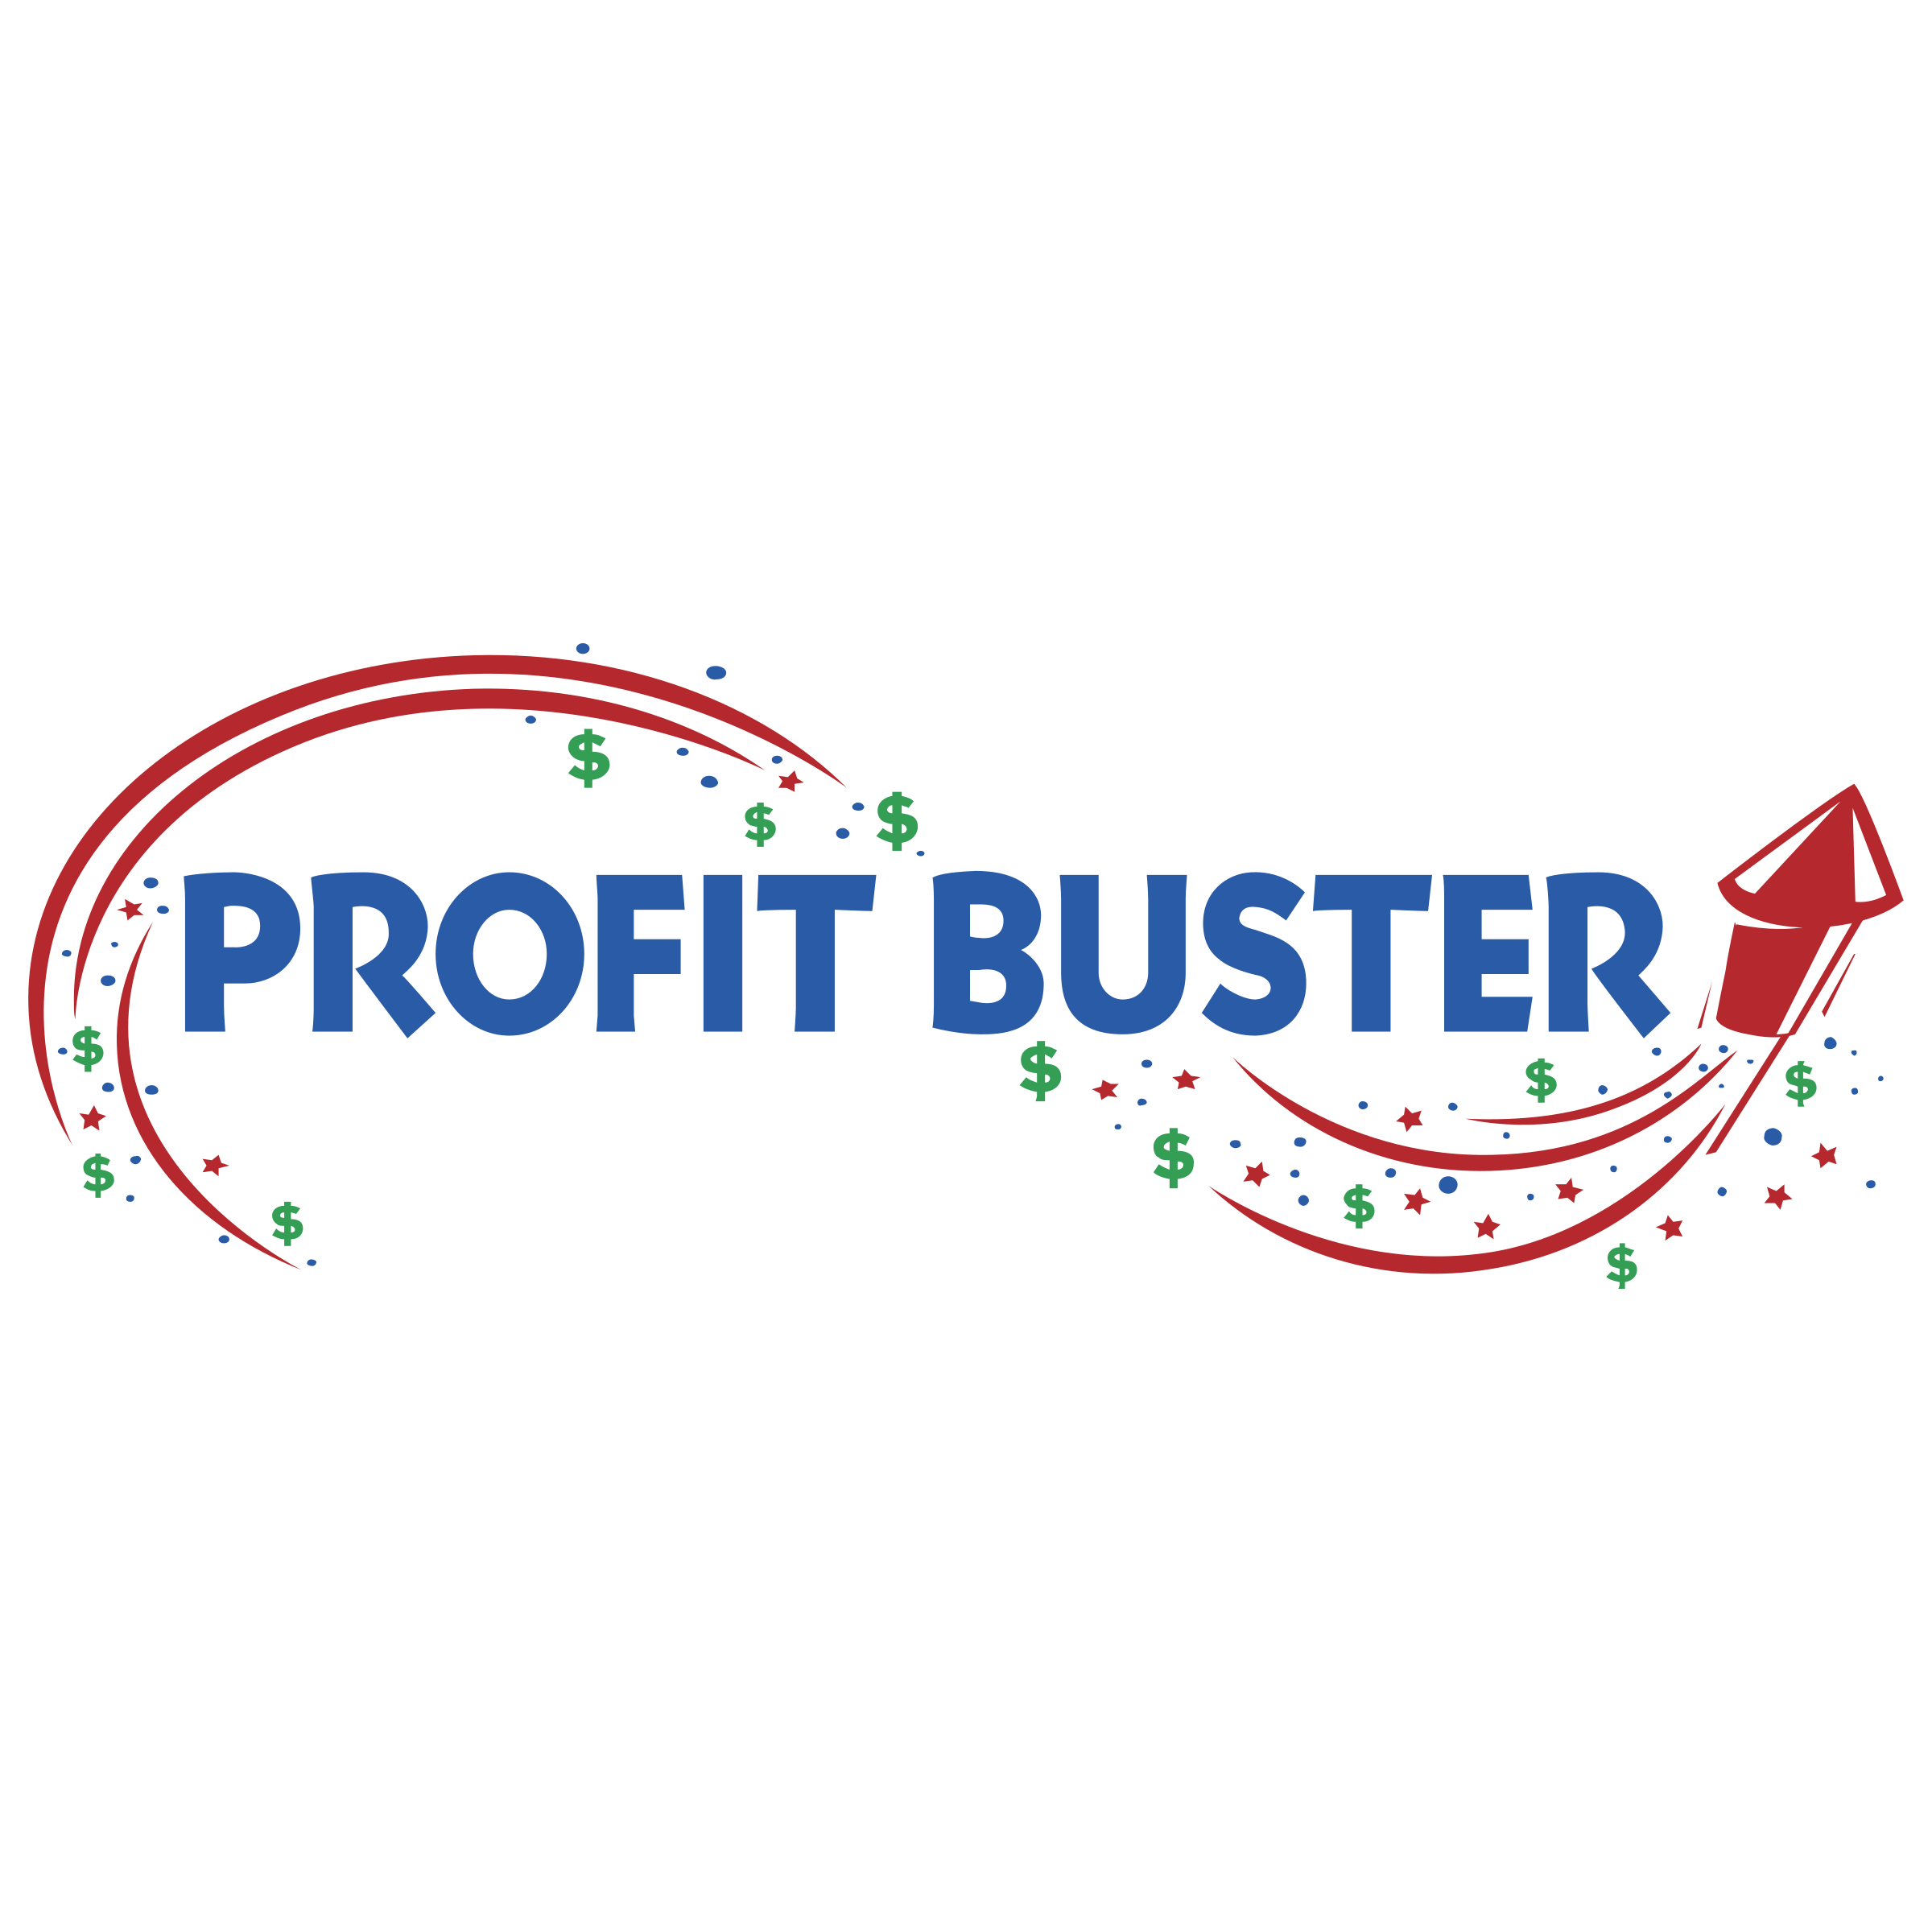 Buster Logo - Profit Buster Logo PNG Transparent & SVG Vector